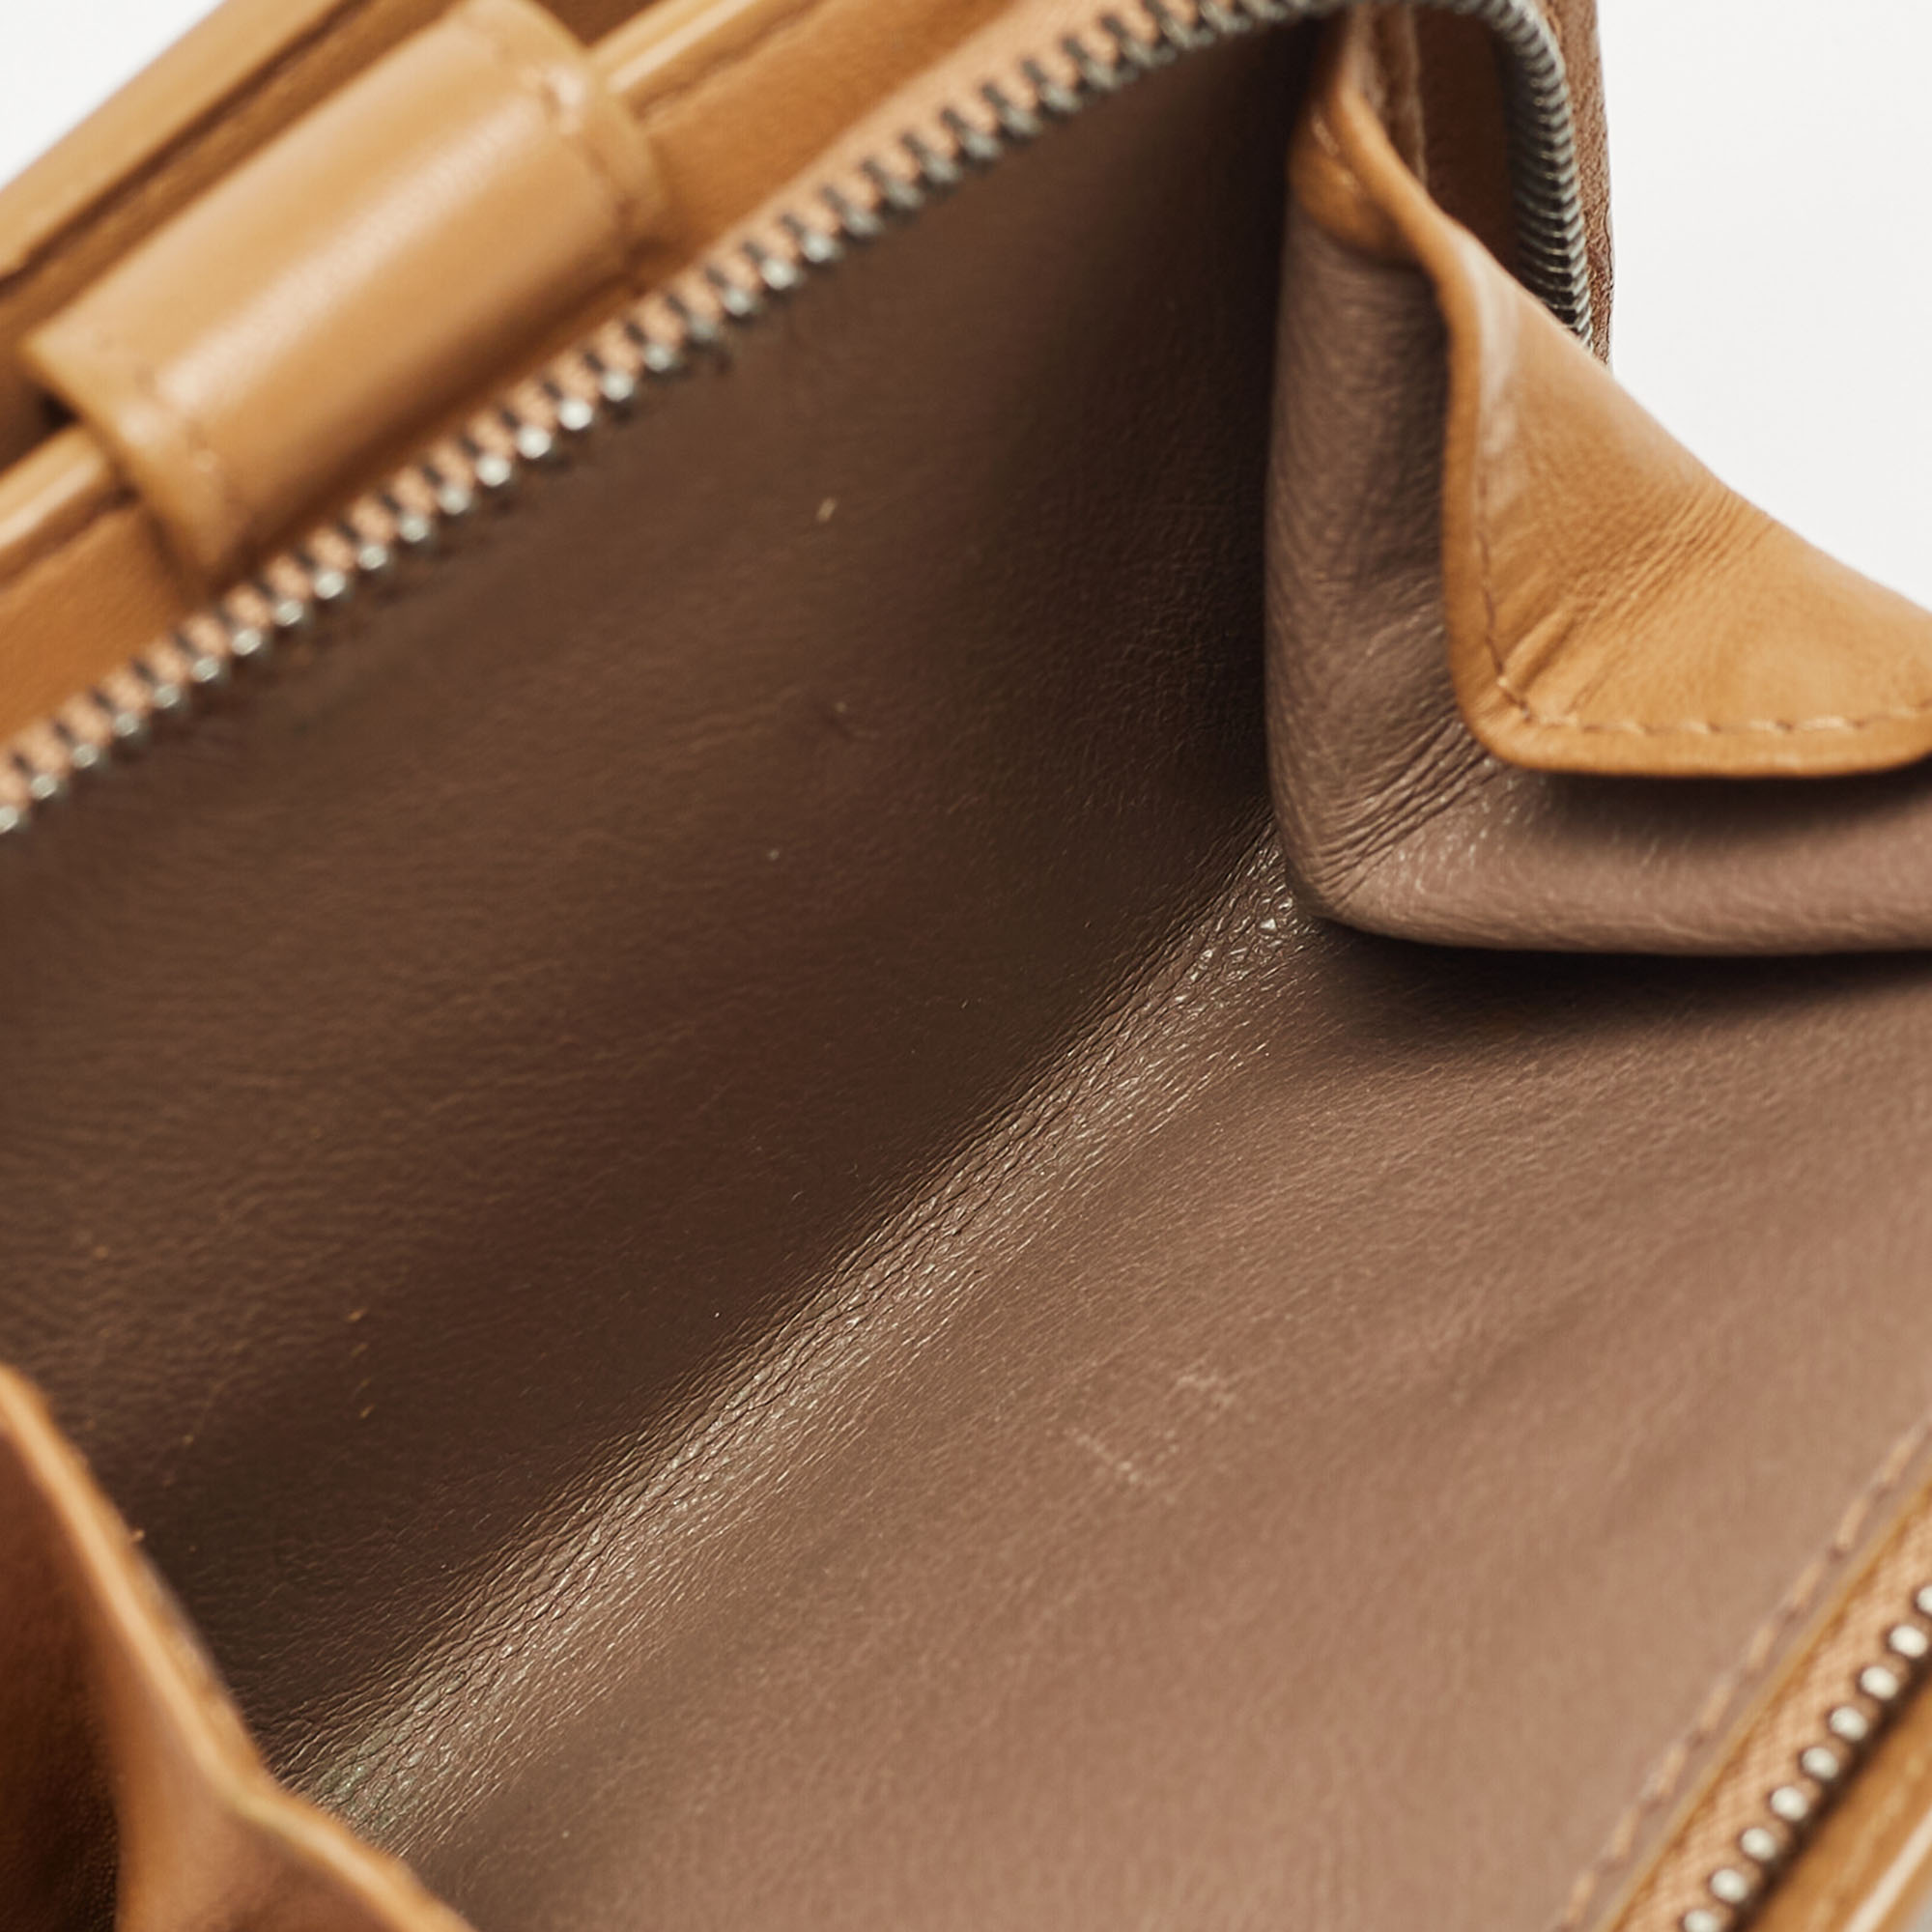 Bottega Veneta Brown Intrecciato Leather French Wallet